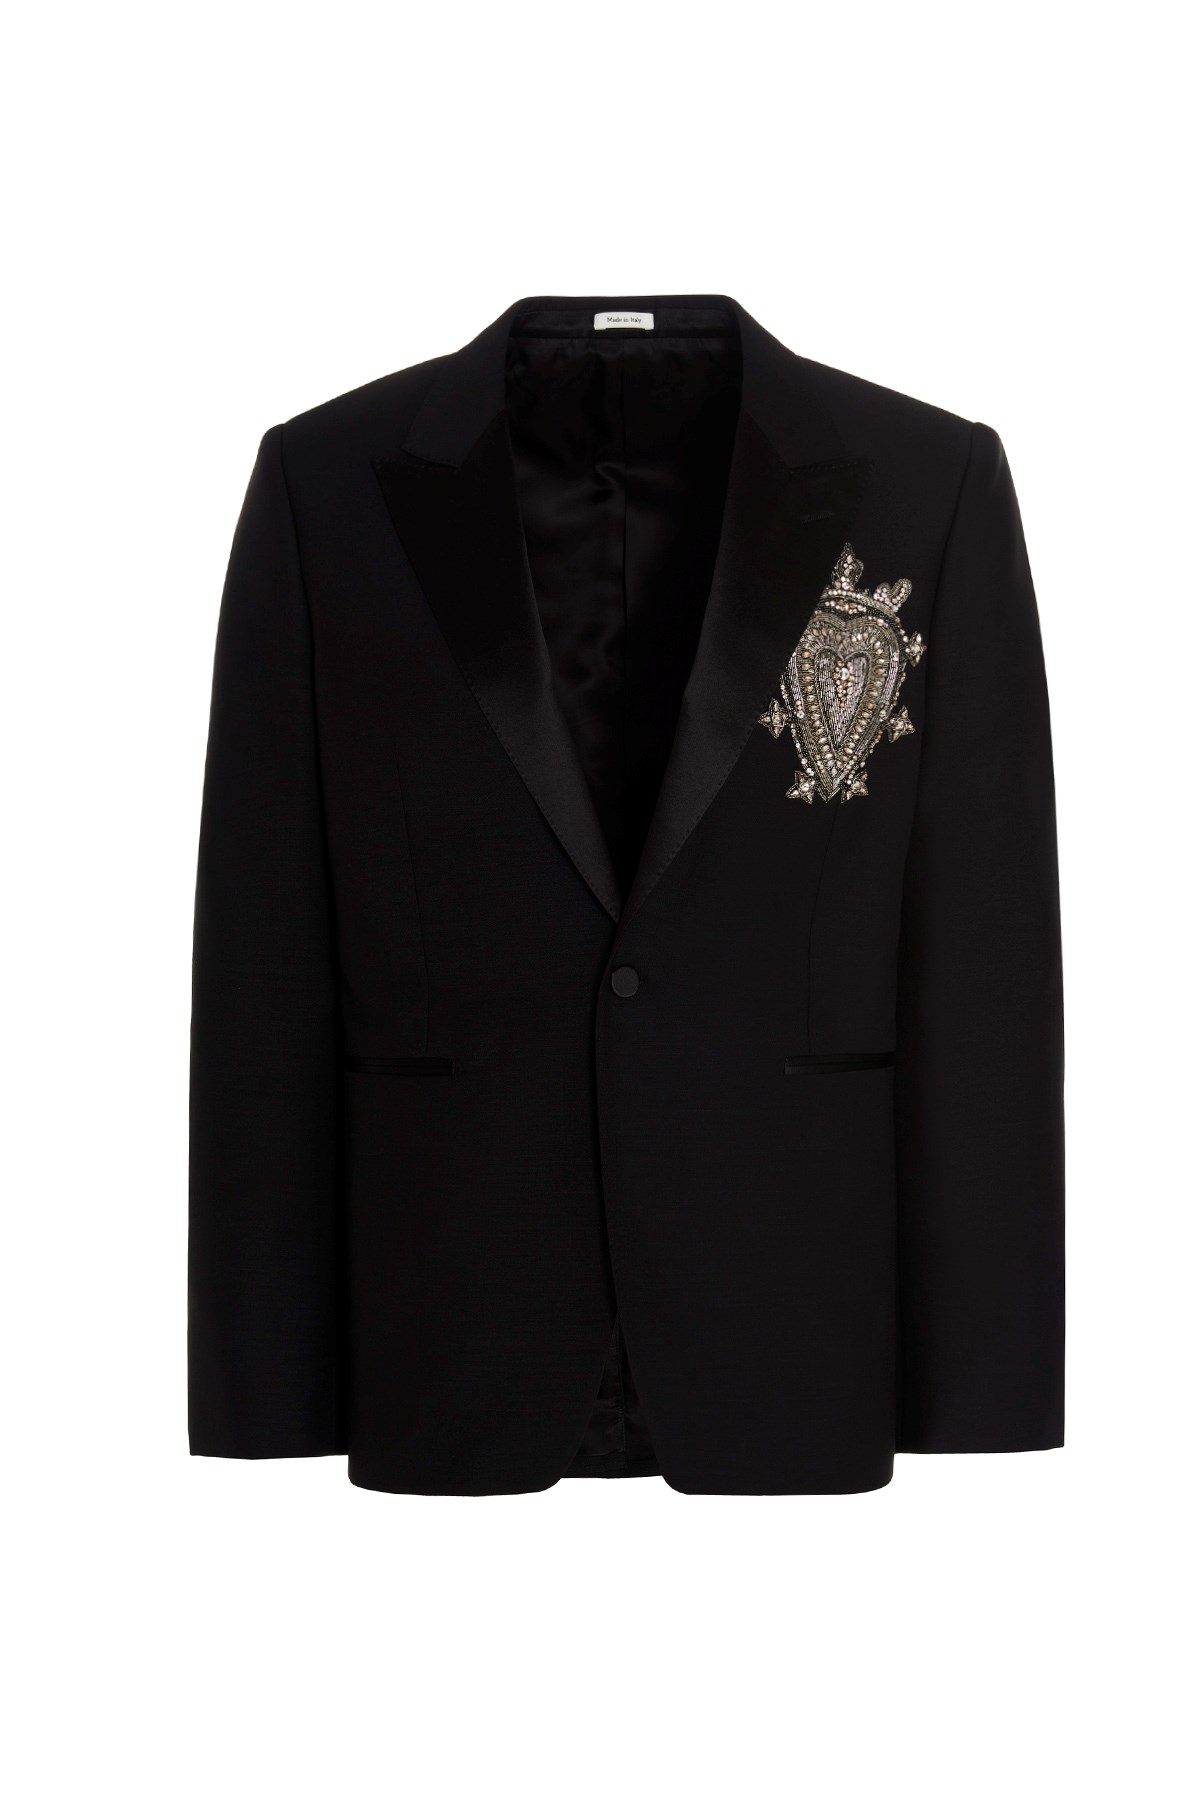 ALEXANDER MCQUEEN Jewel Detail Tuxedo Blazer Jacket